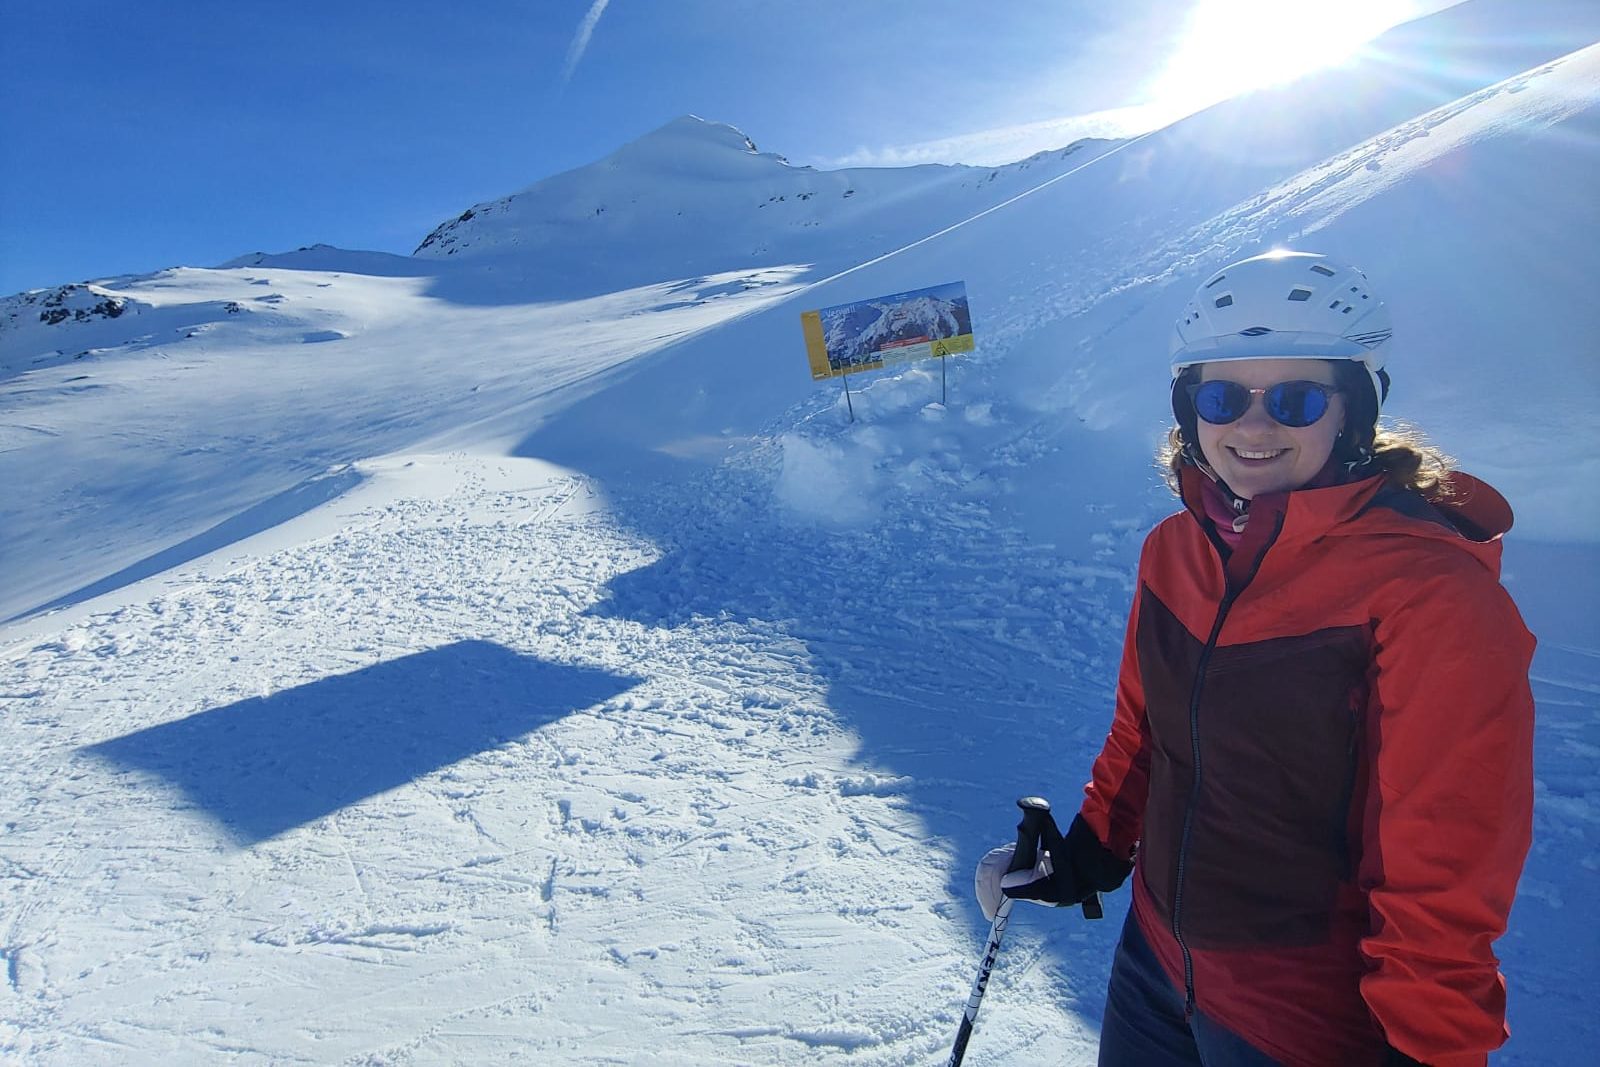 Robin houdt ook van skiën, vooral in de zon, in Oostenrijk! Genieten in de sneeuw, en lekker sportief bezig zijn.